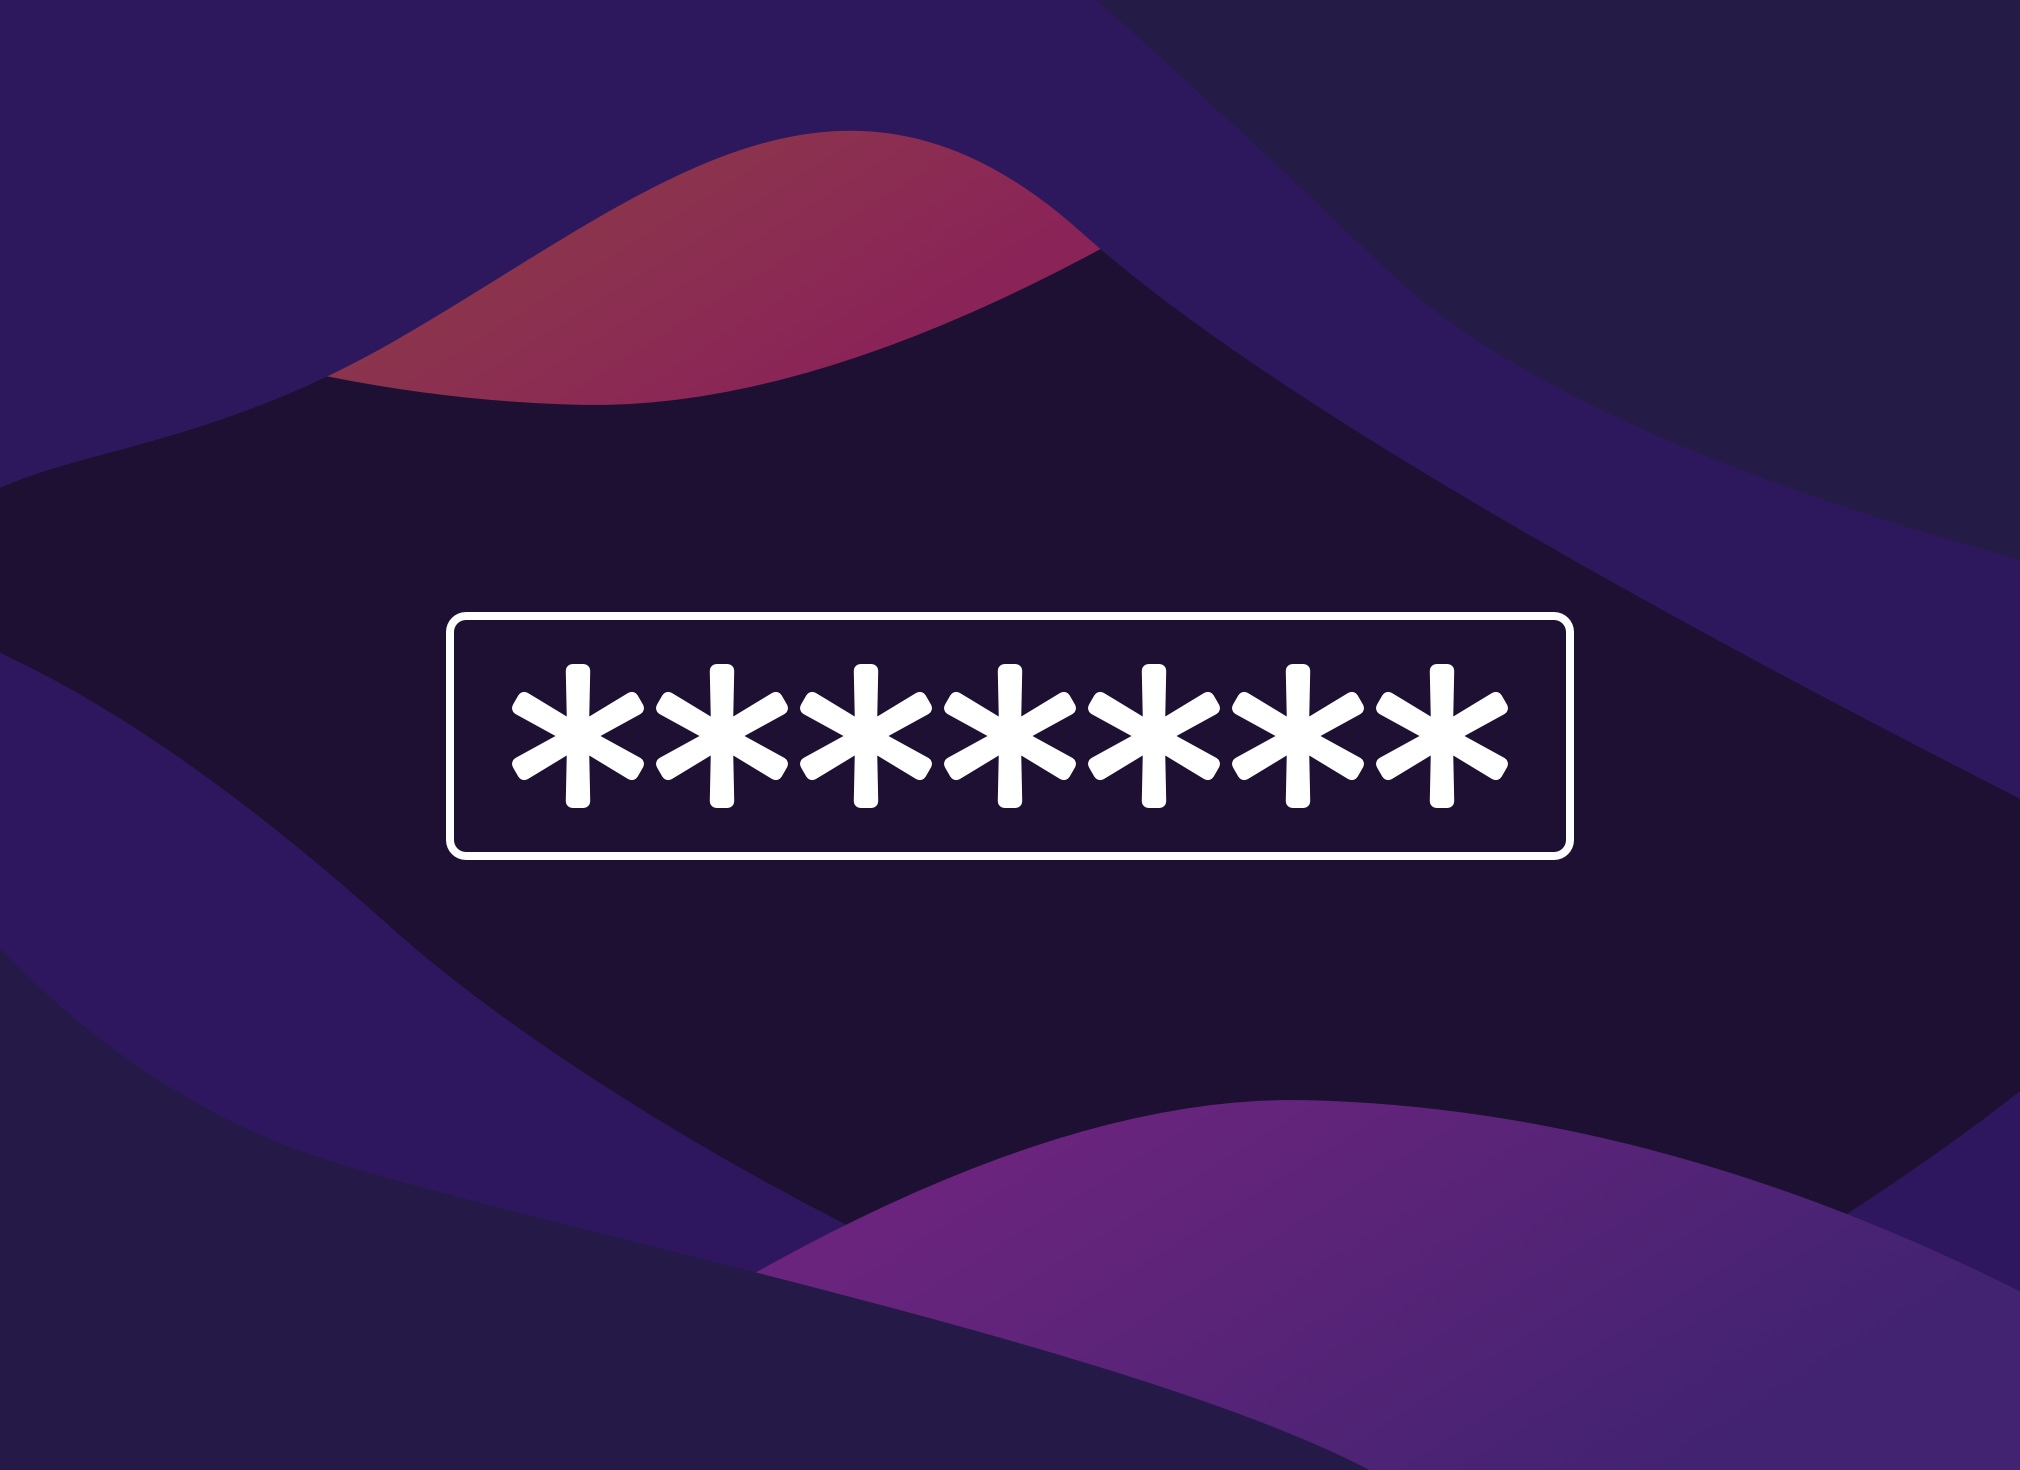 Bunte Formen im Hintergrund mit markantem Passwort-Eingabefeld repräsentiert durch mehrere Stern-Symbole im Vordergrund.